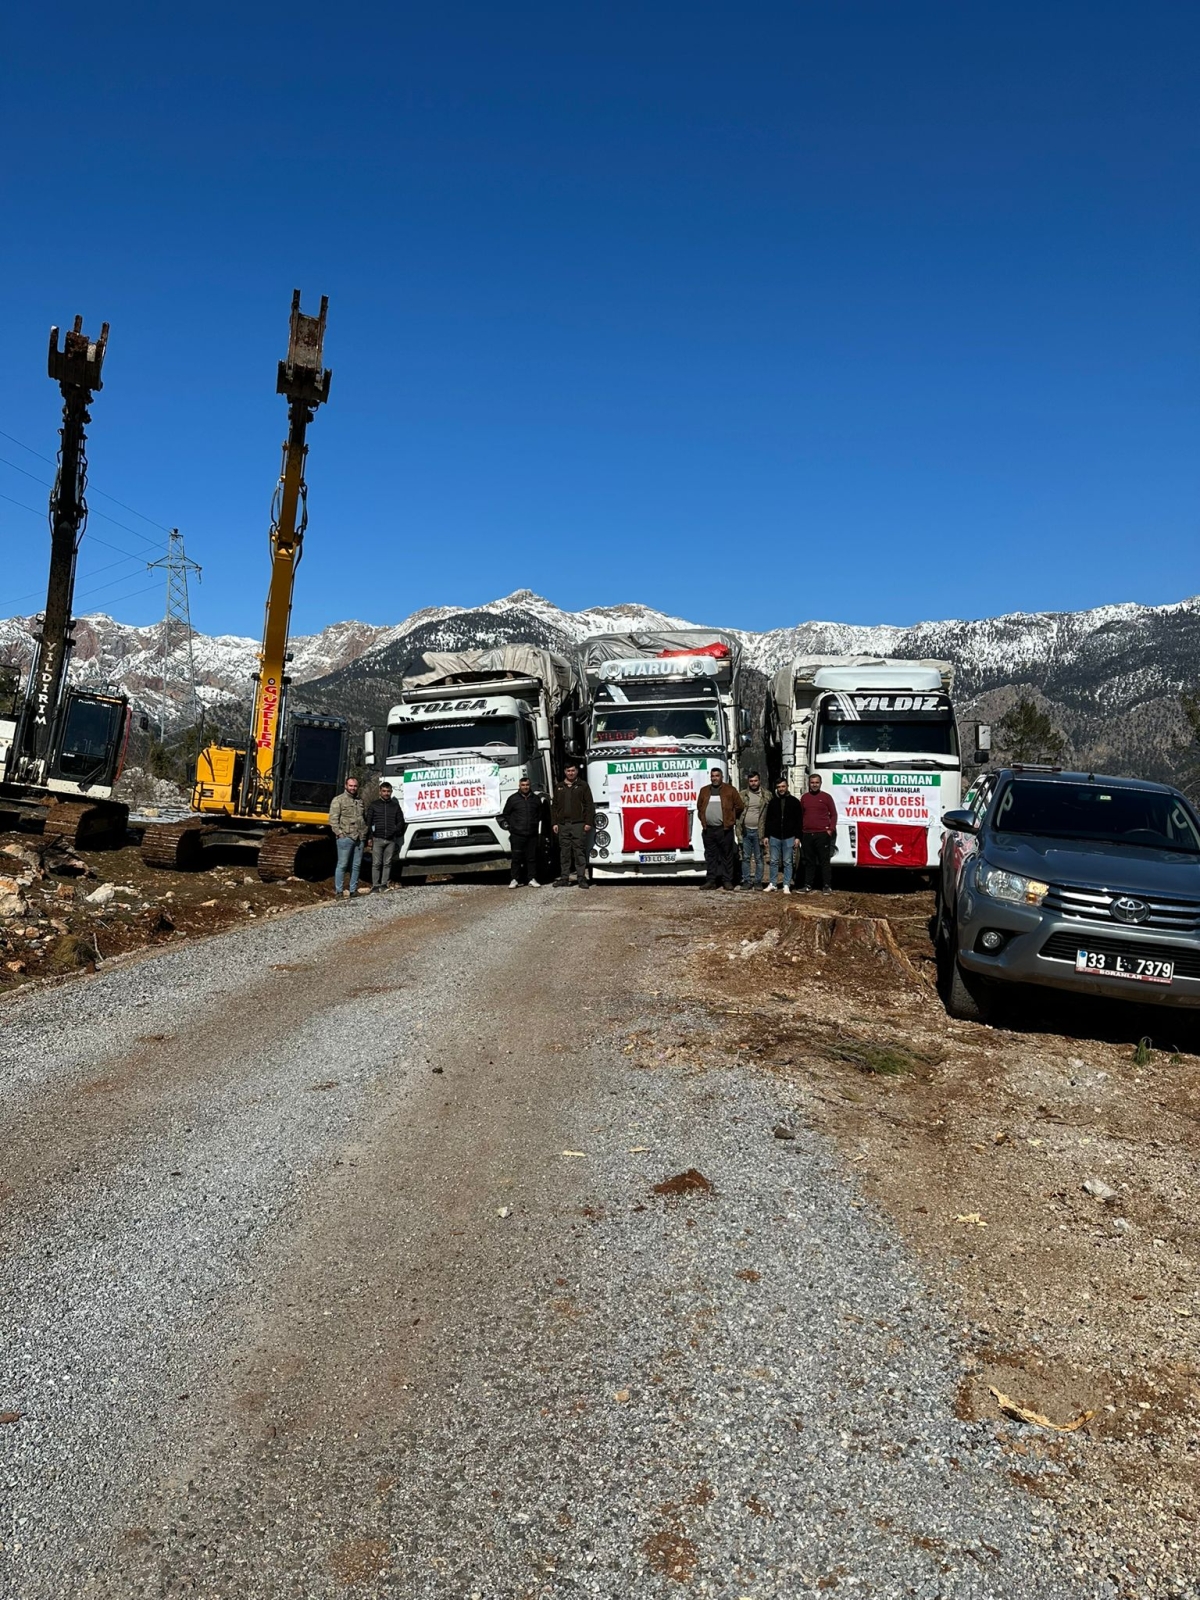 Anamur Orman İşletme Müdürlüğü Deprem bölgesine 13 odun kamyonu gönderdi.